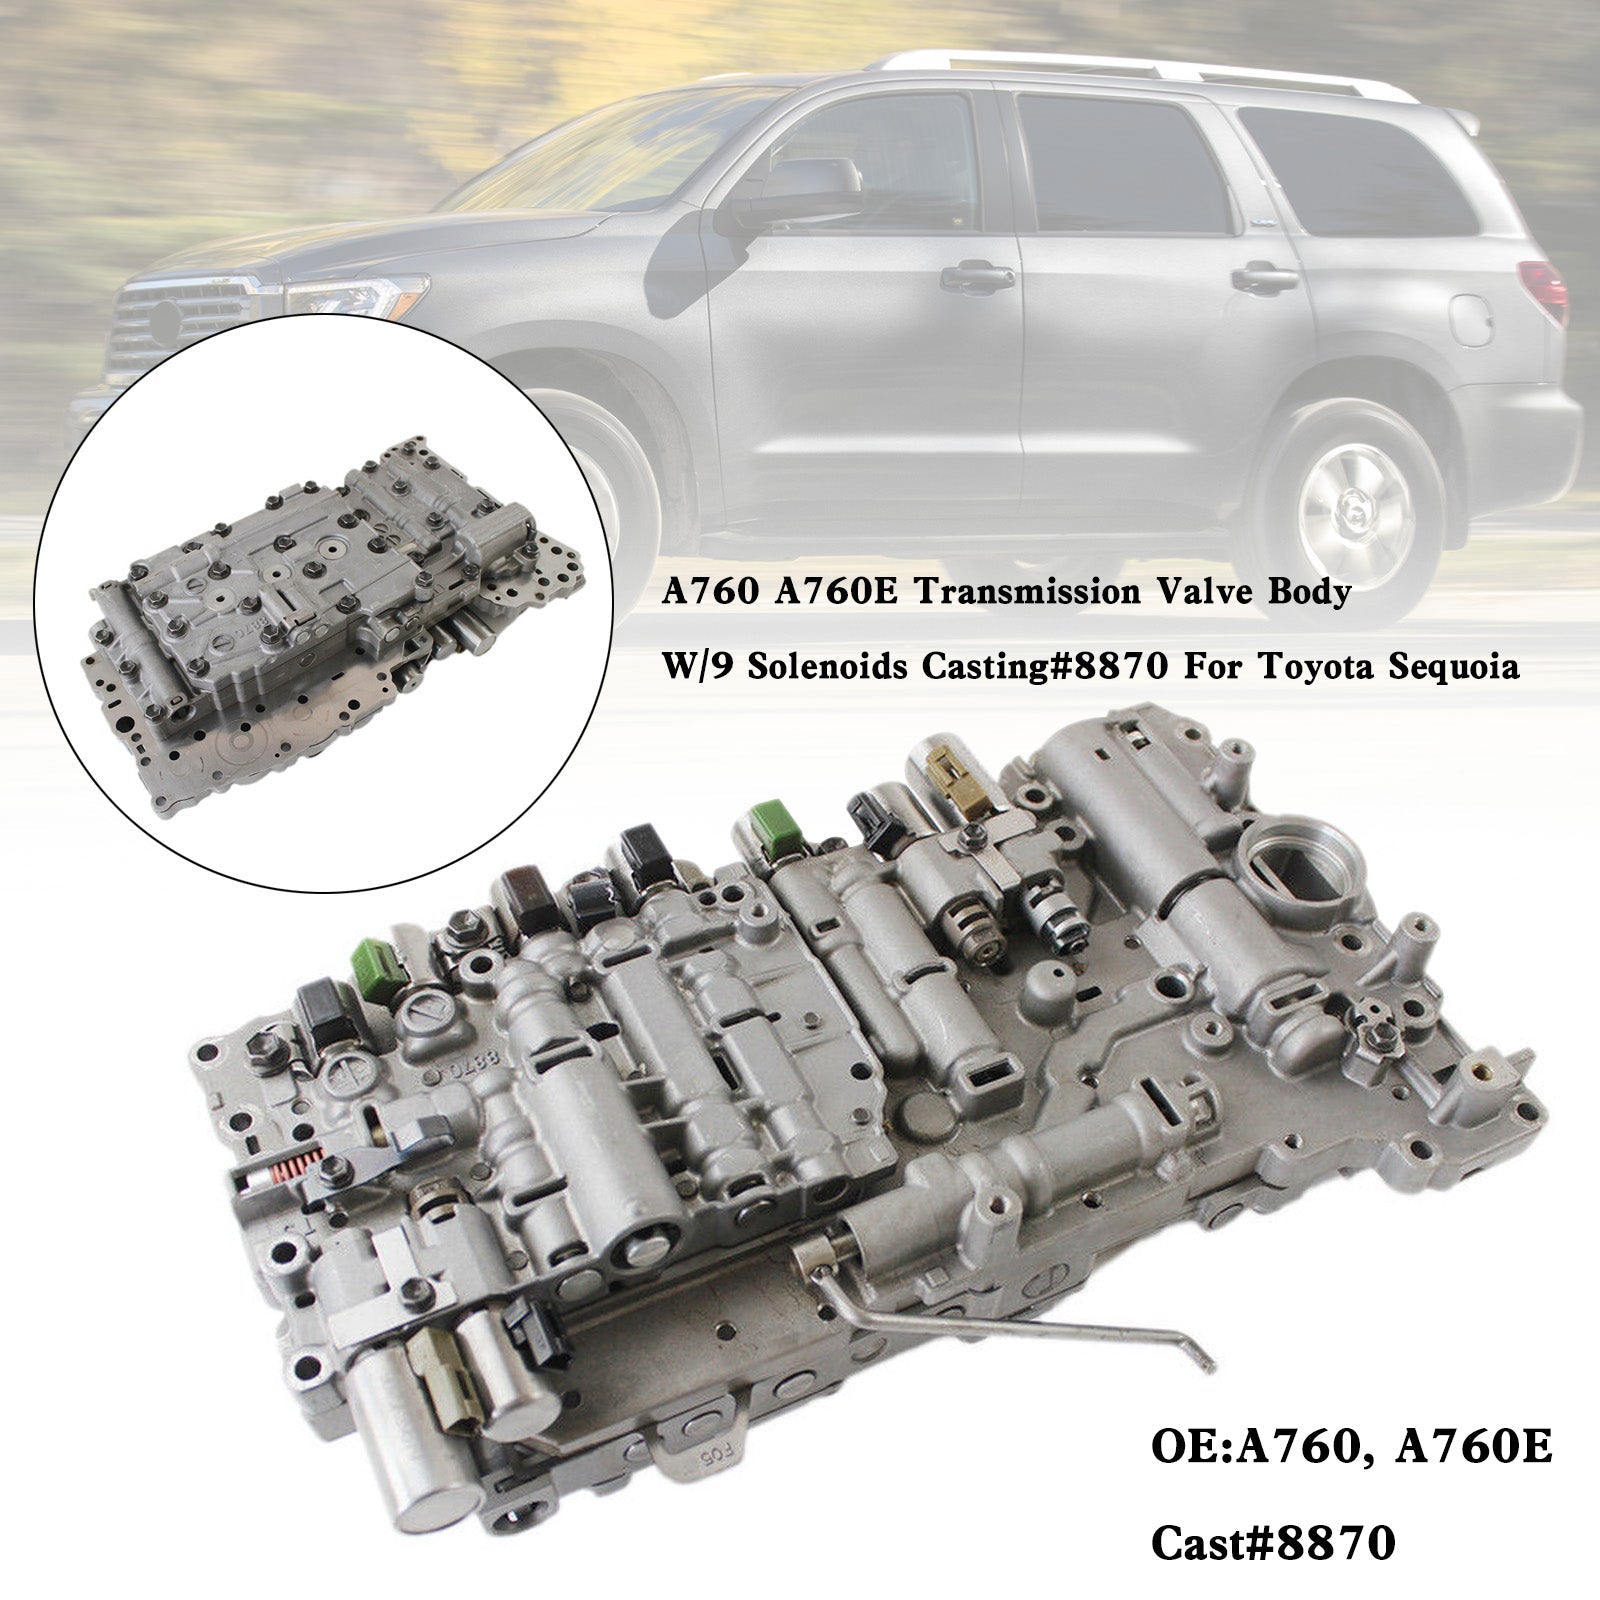 Corpo valvola trasmissione Toyota Sequoia 2009-2012 A760 A760E con 9 solenoidi stampati #8870